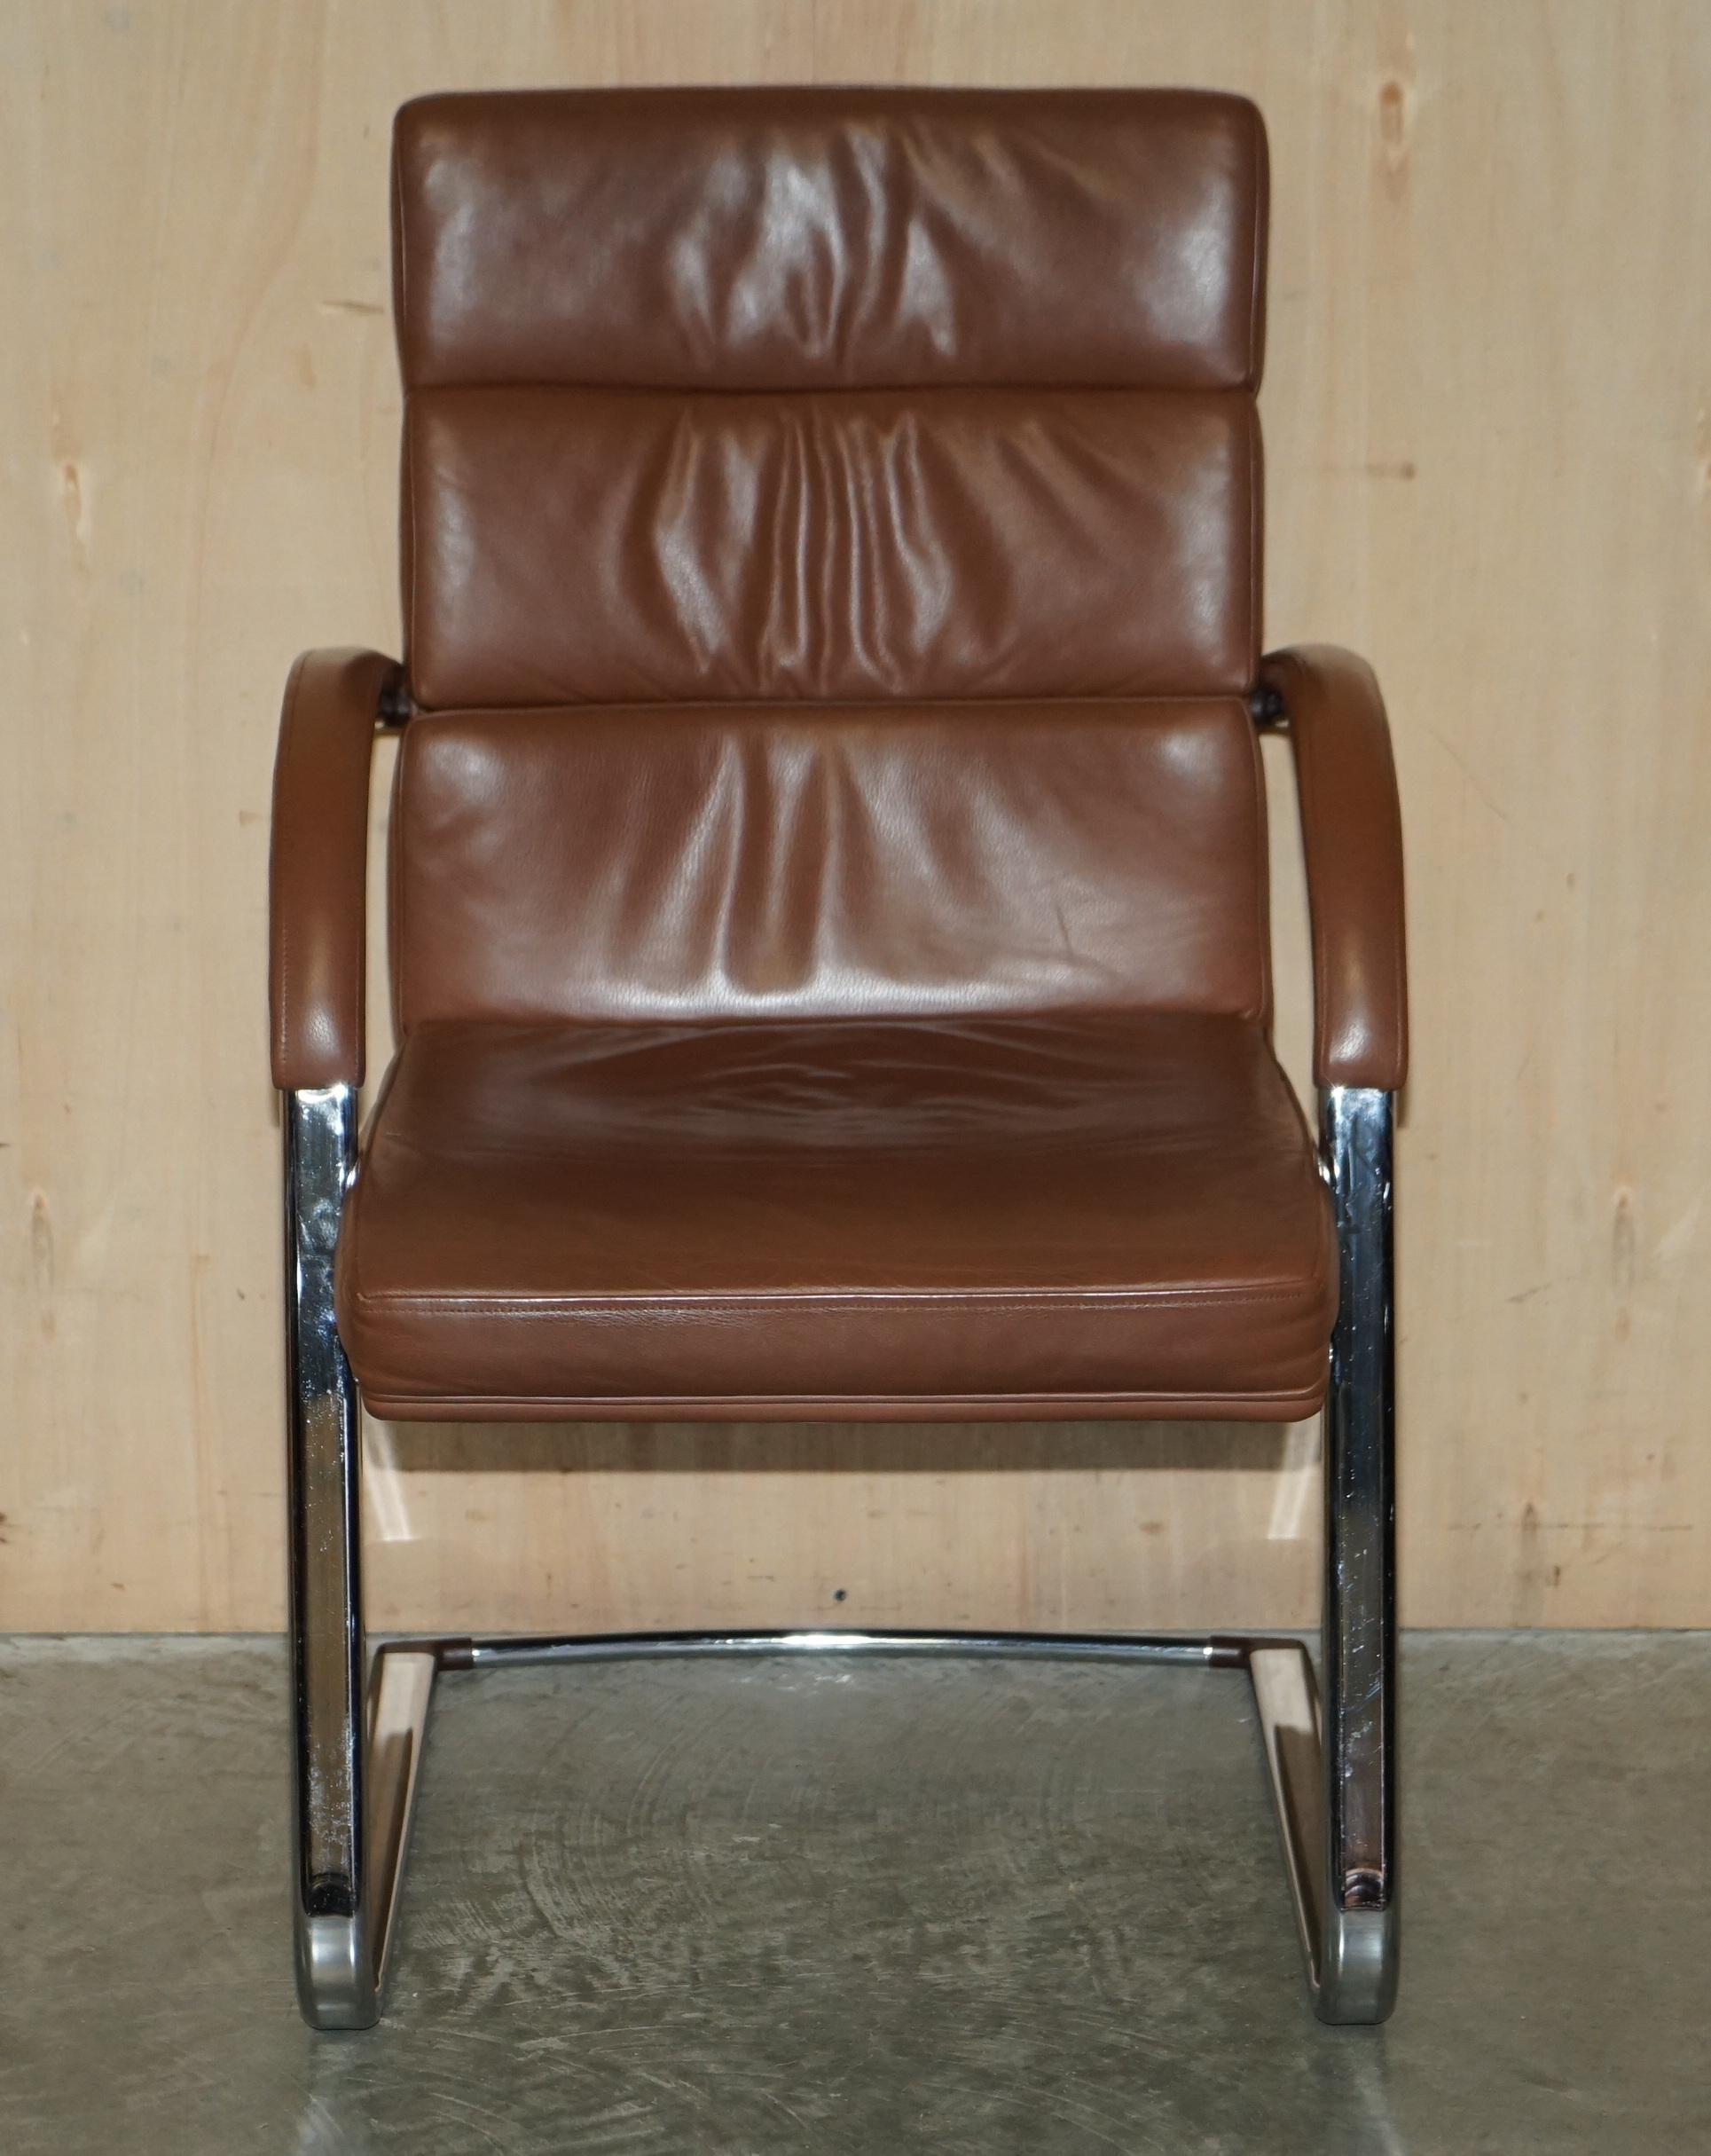 Wir freuen uns, 1 von 17 original William Hans Orion Bürostühlen aus braunem Leder zum Verkauf anbieten zu können RR £1299

Diese Stühle sind Teil einer luxuriösen Sitzungszimmer-Suite, die Stühle sind super und ich meine super bequem, man kann